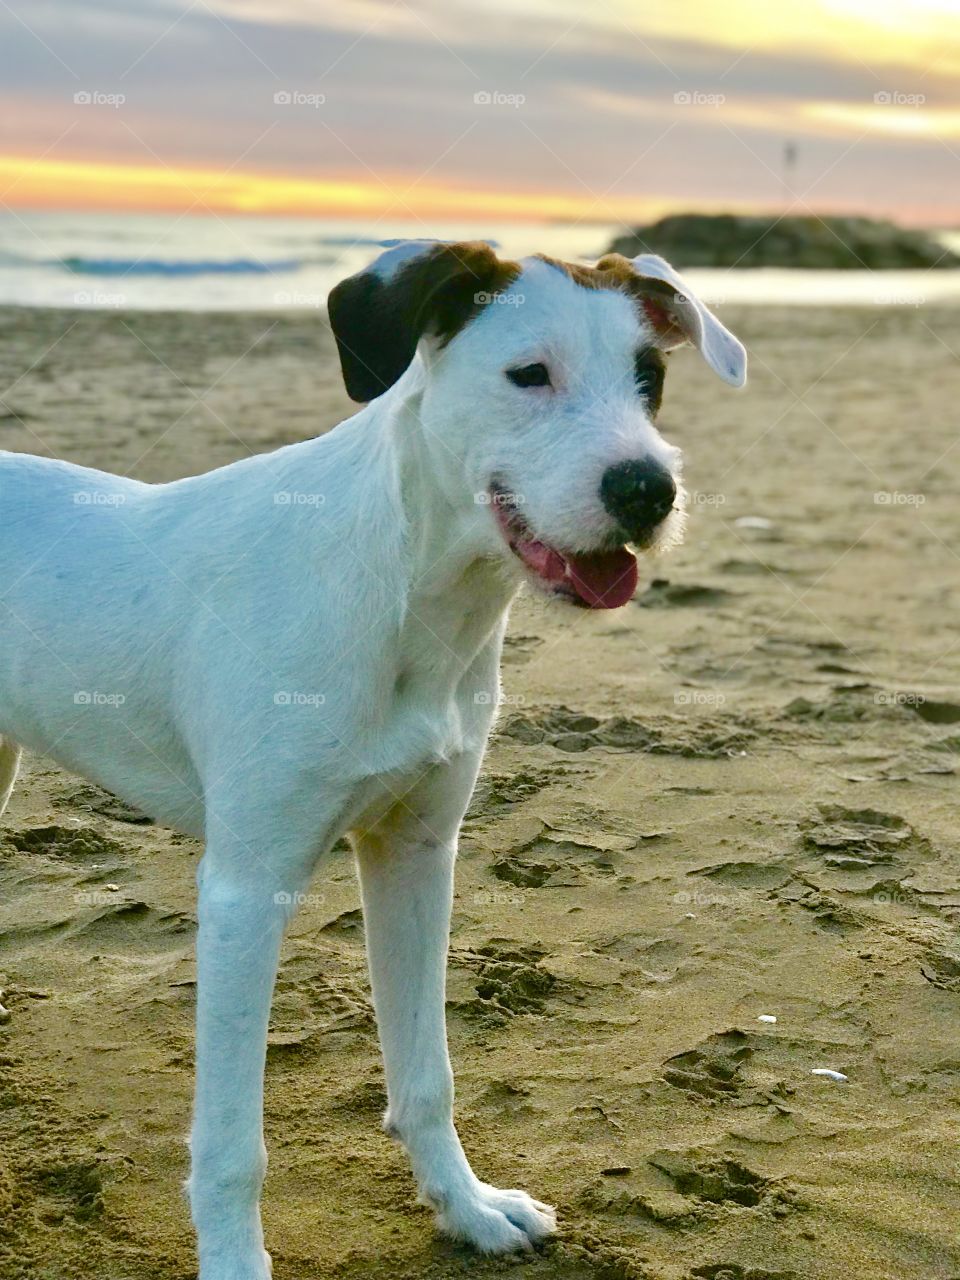 My dog in spain lovely sunset 